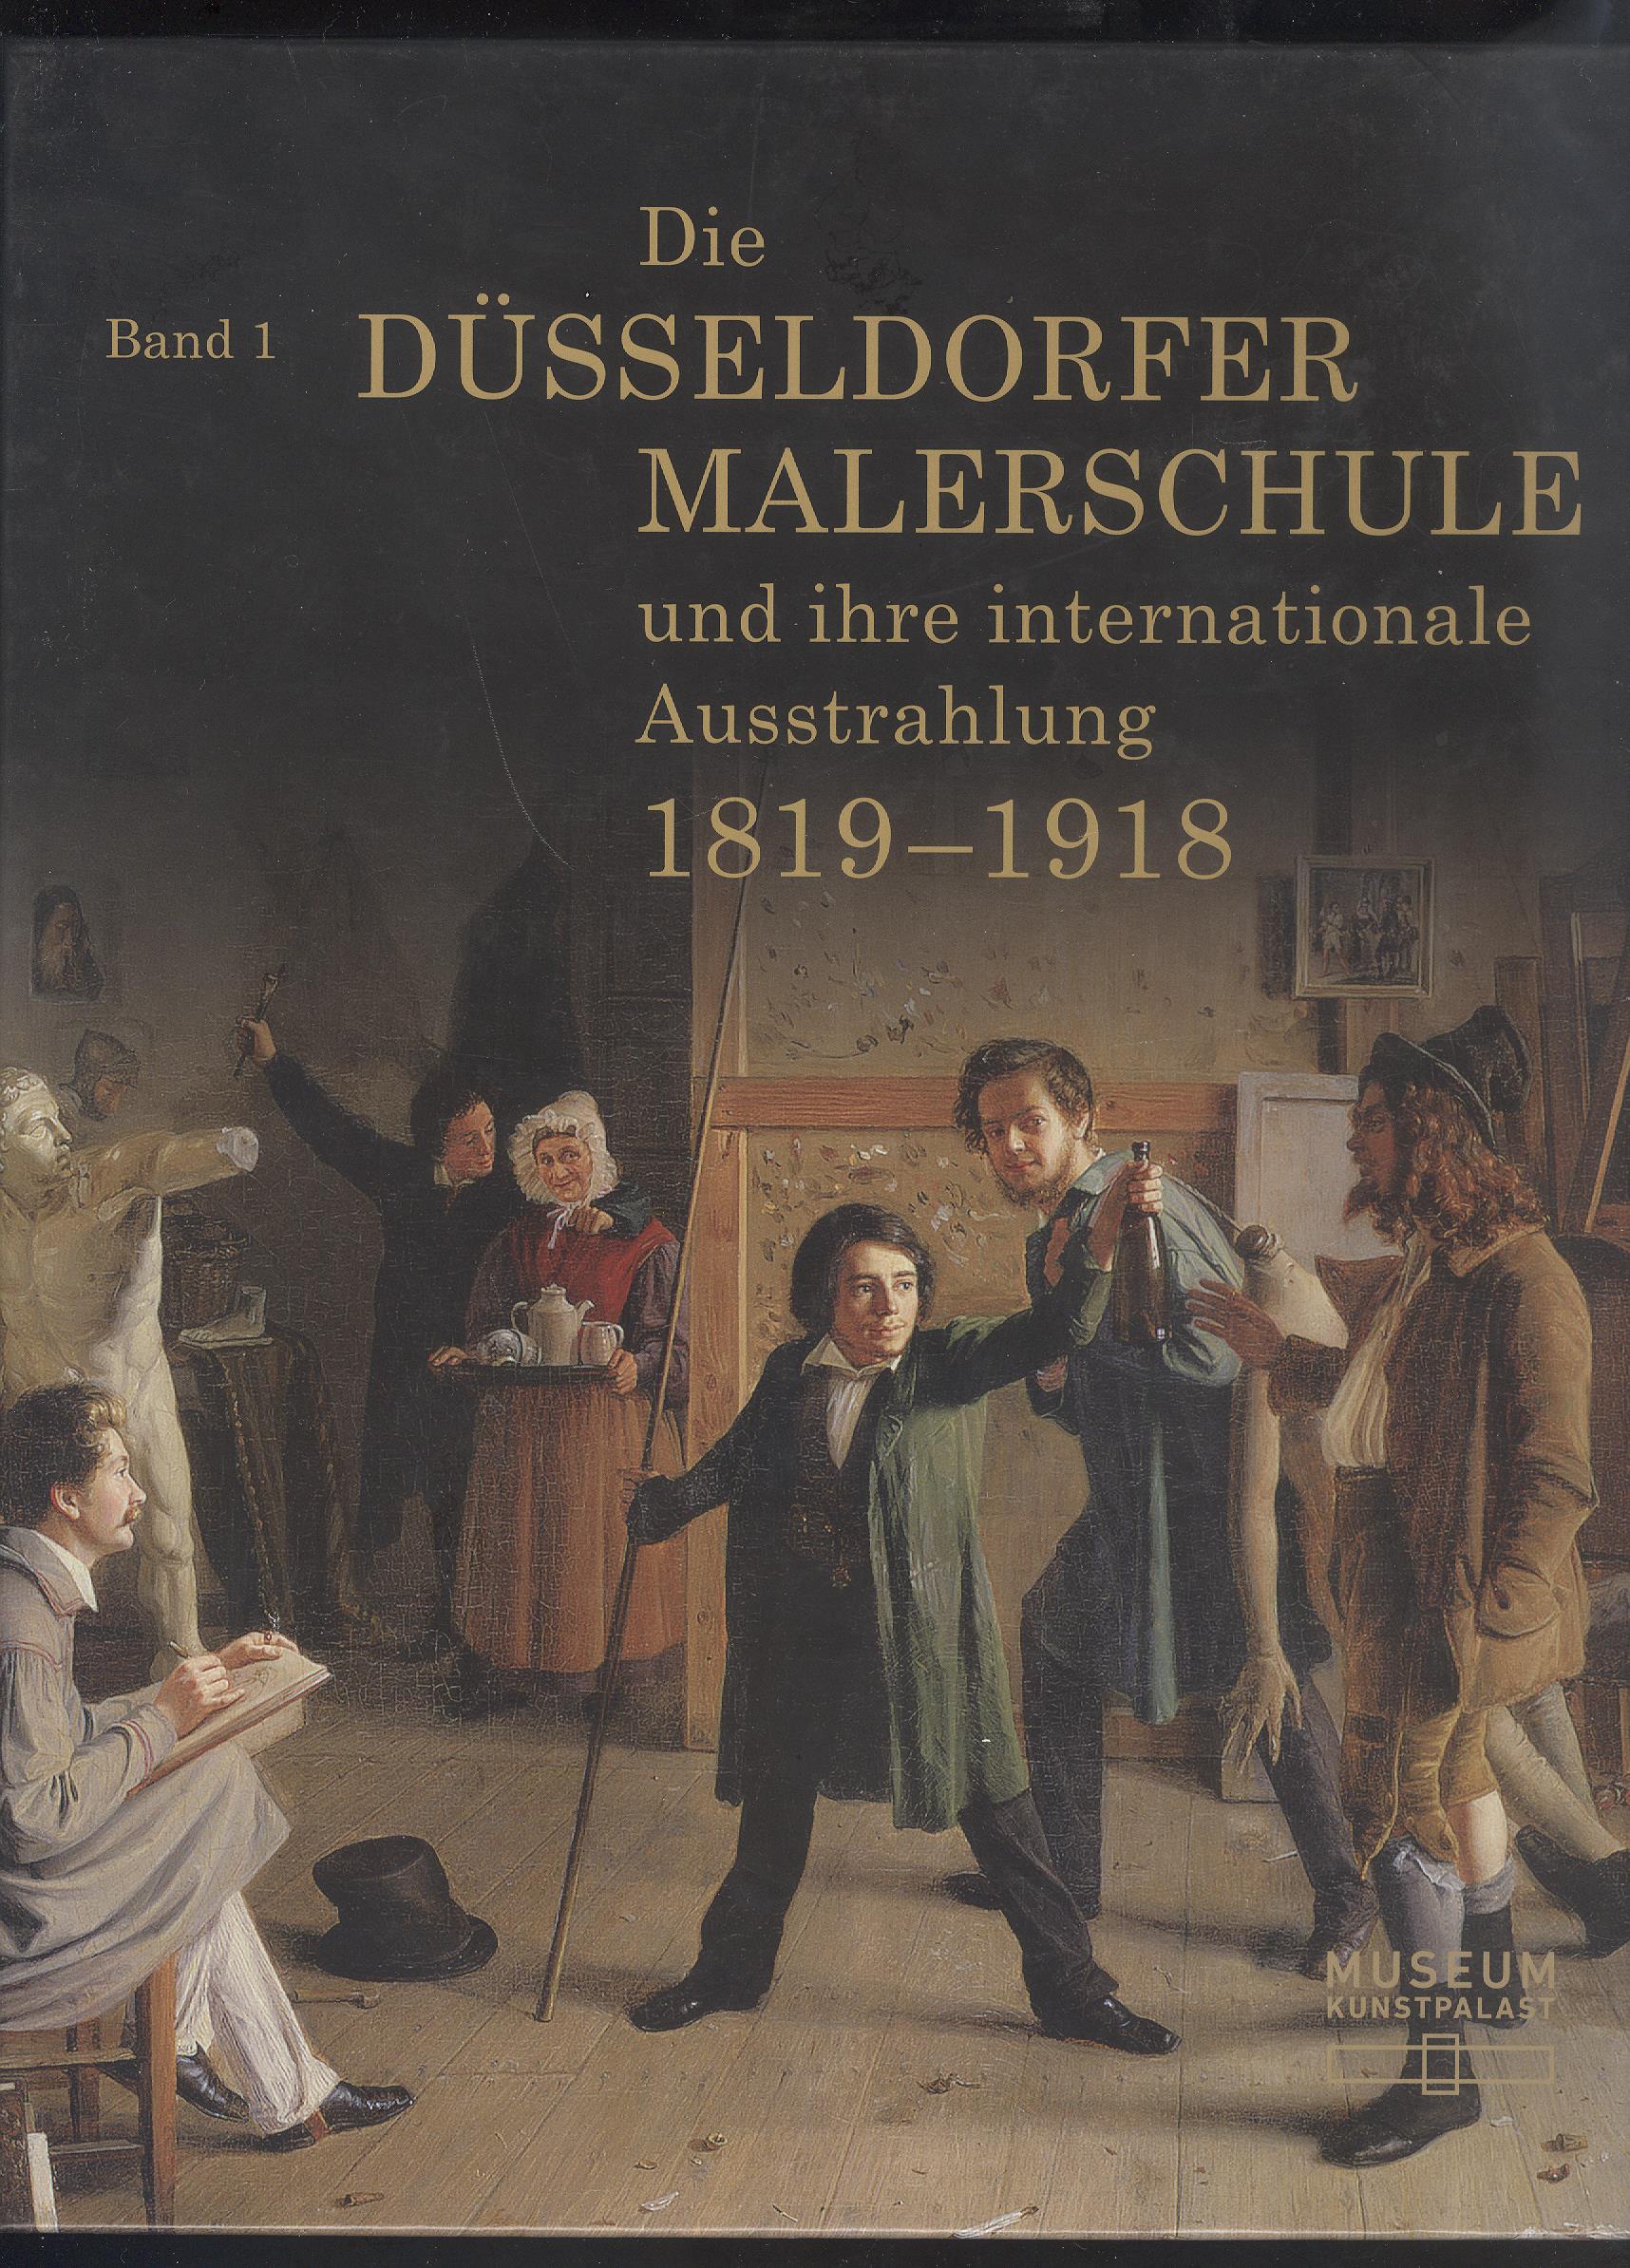 Die Düsseldorfer Malerschule und ihre internationale Ausstrahlung 1819-1918, Band 1: Essays.